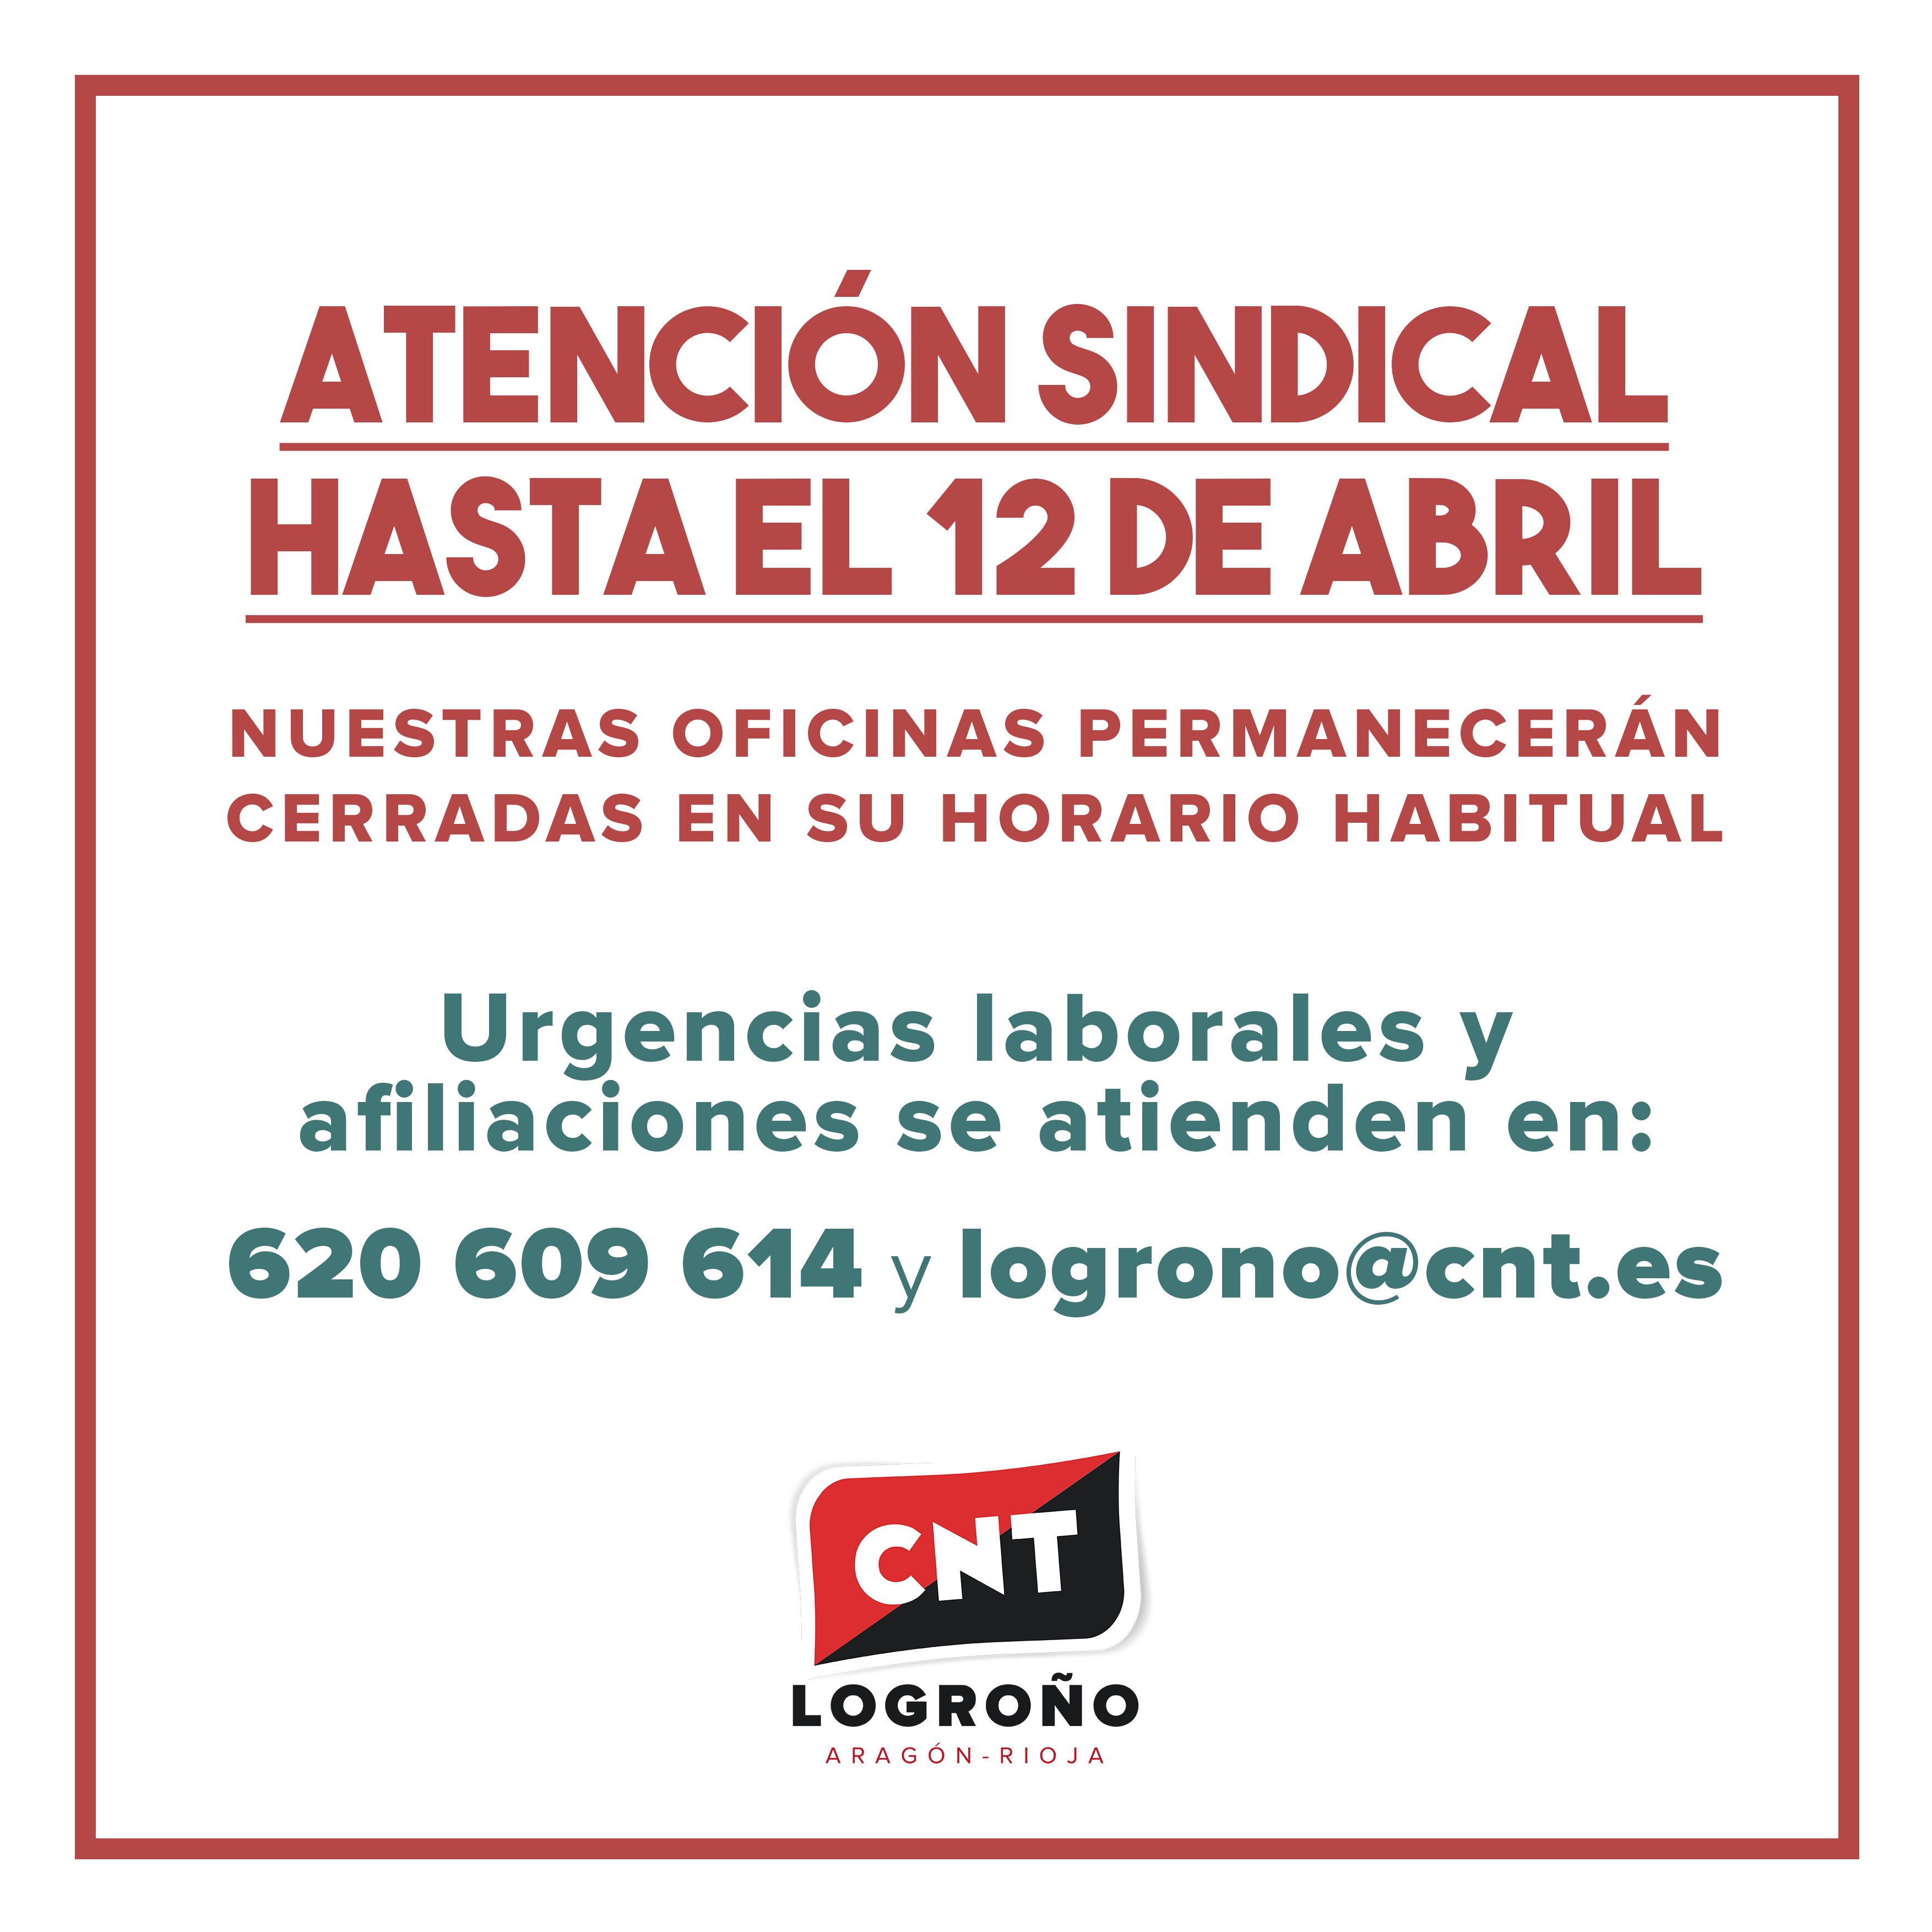 Atención sindical hasta el 12 de abril – CNT Logroño